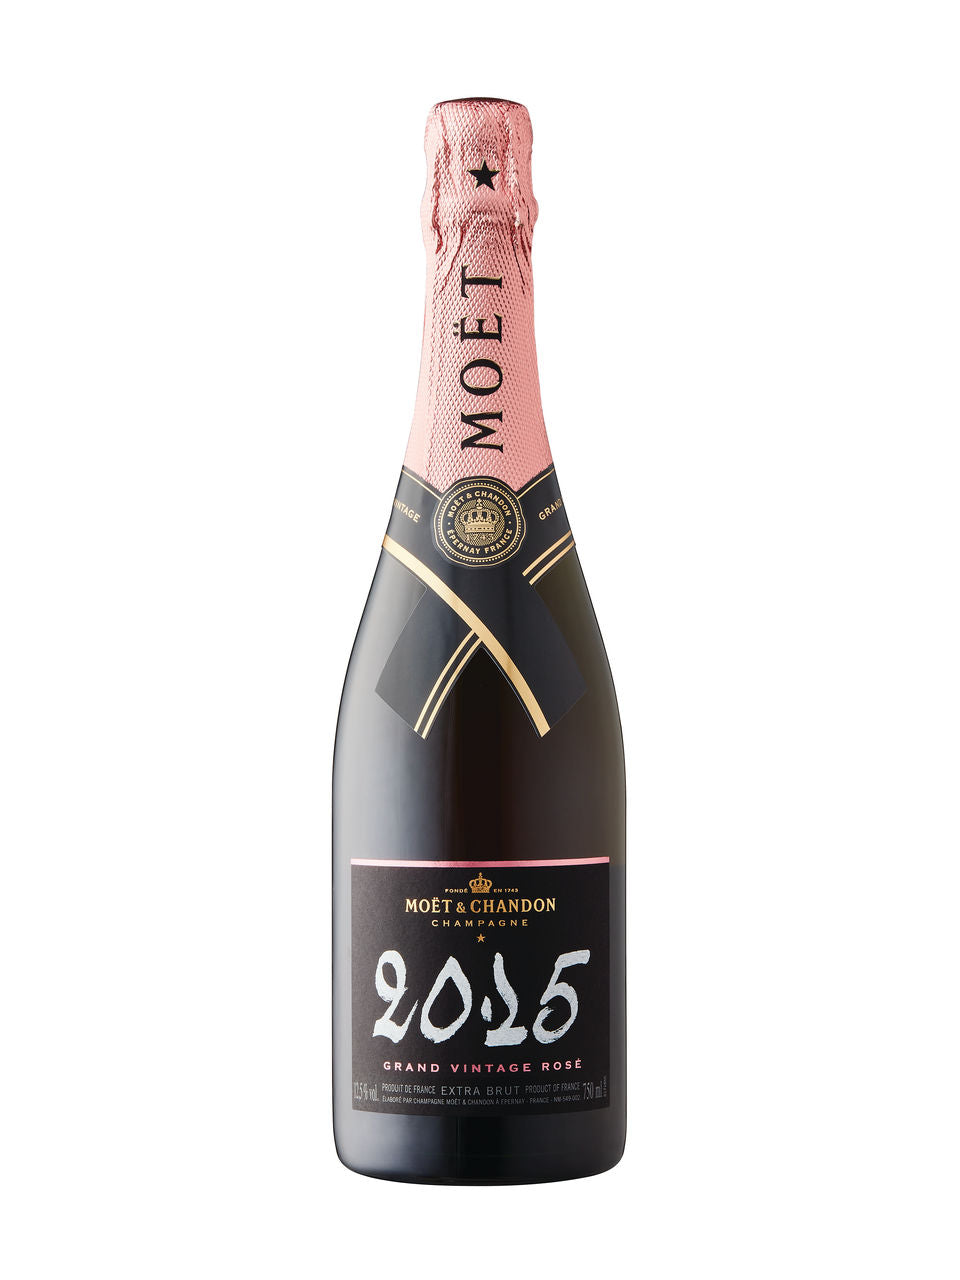 Moët & Chandon Grand Vintage Extra Brut Rosé Champagne 2015 750 ml bottle VINTAGES